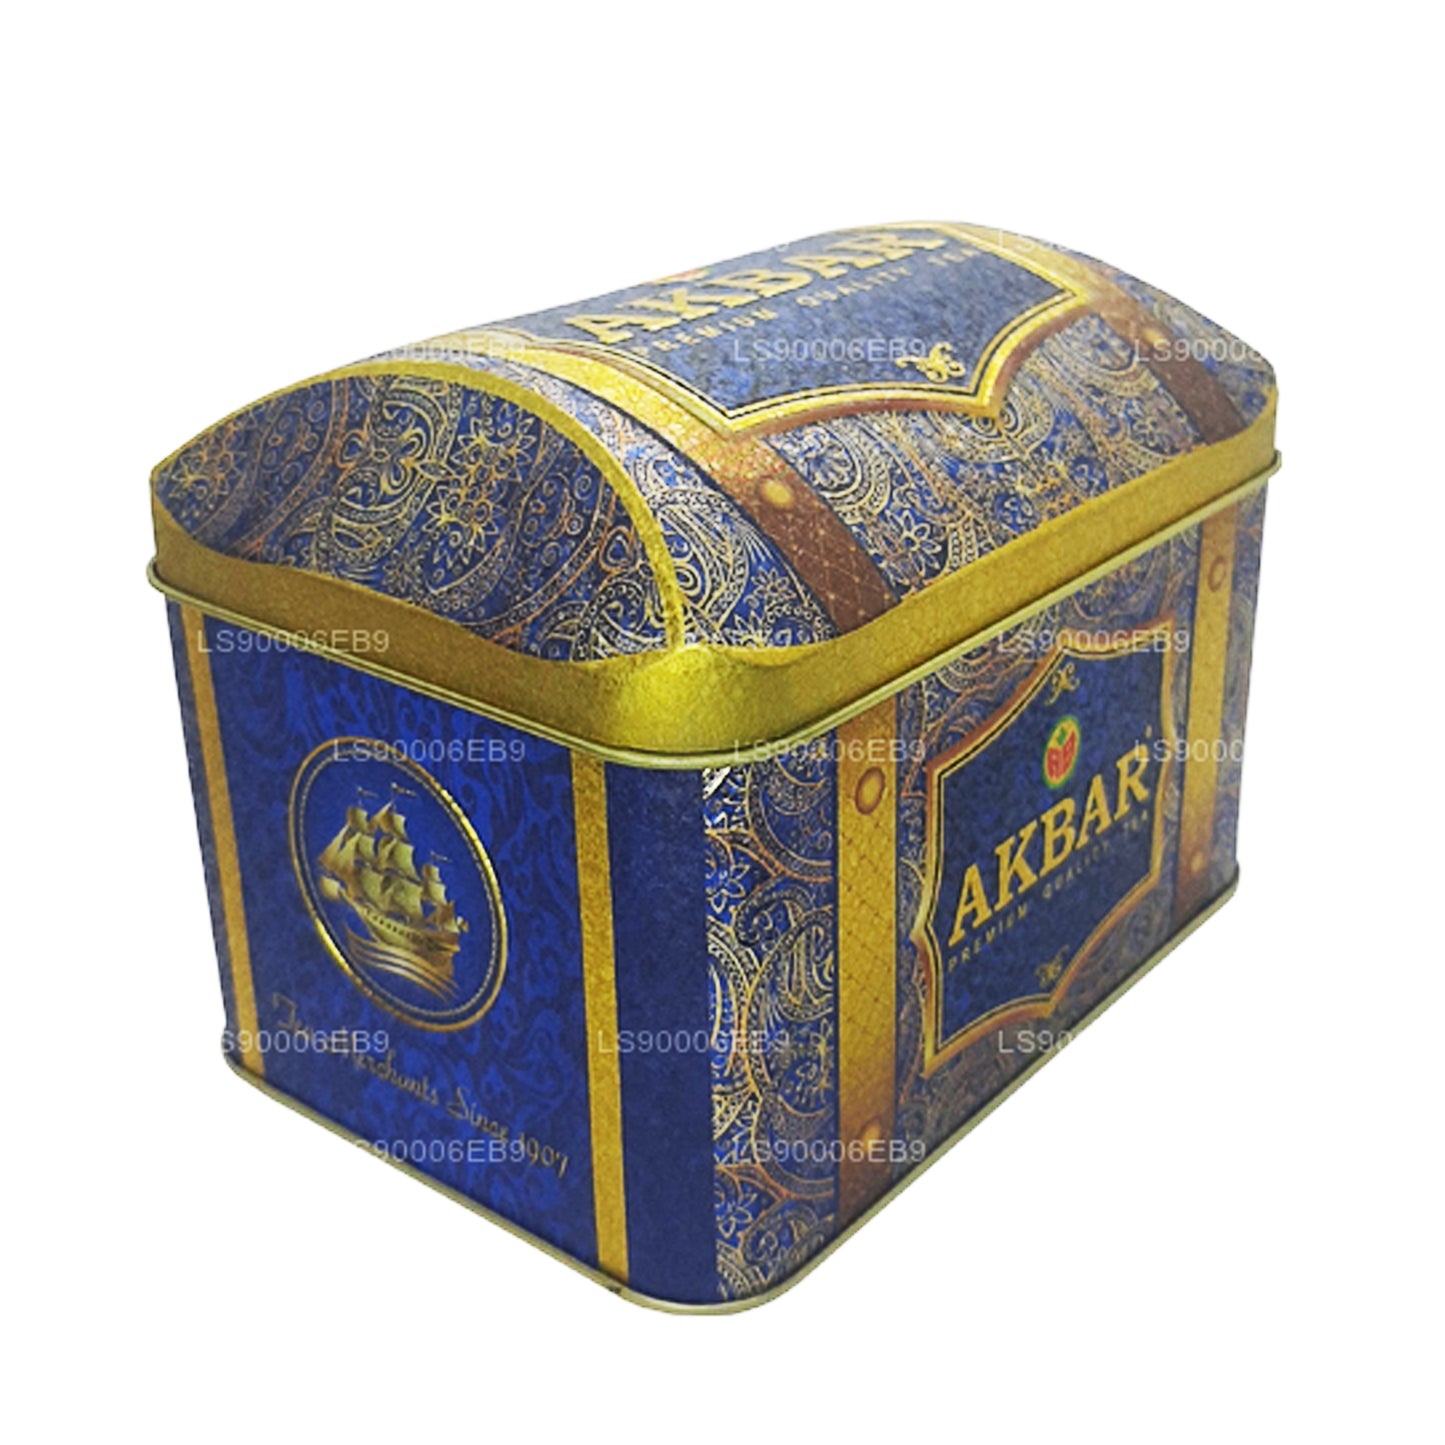 Akbar Exclusive Collection Oriental Mystery Schatzkiste (250 g)